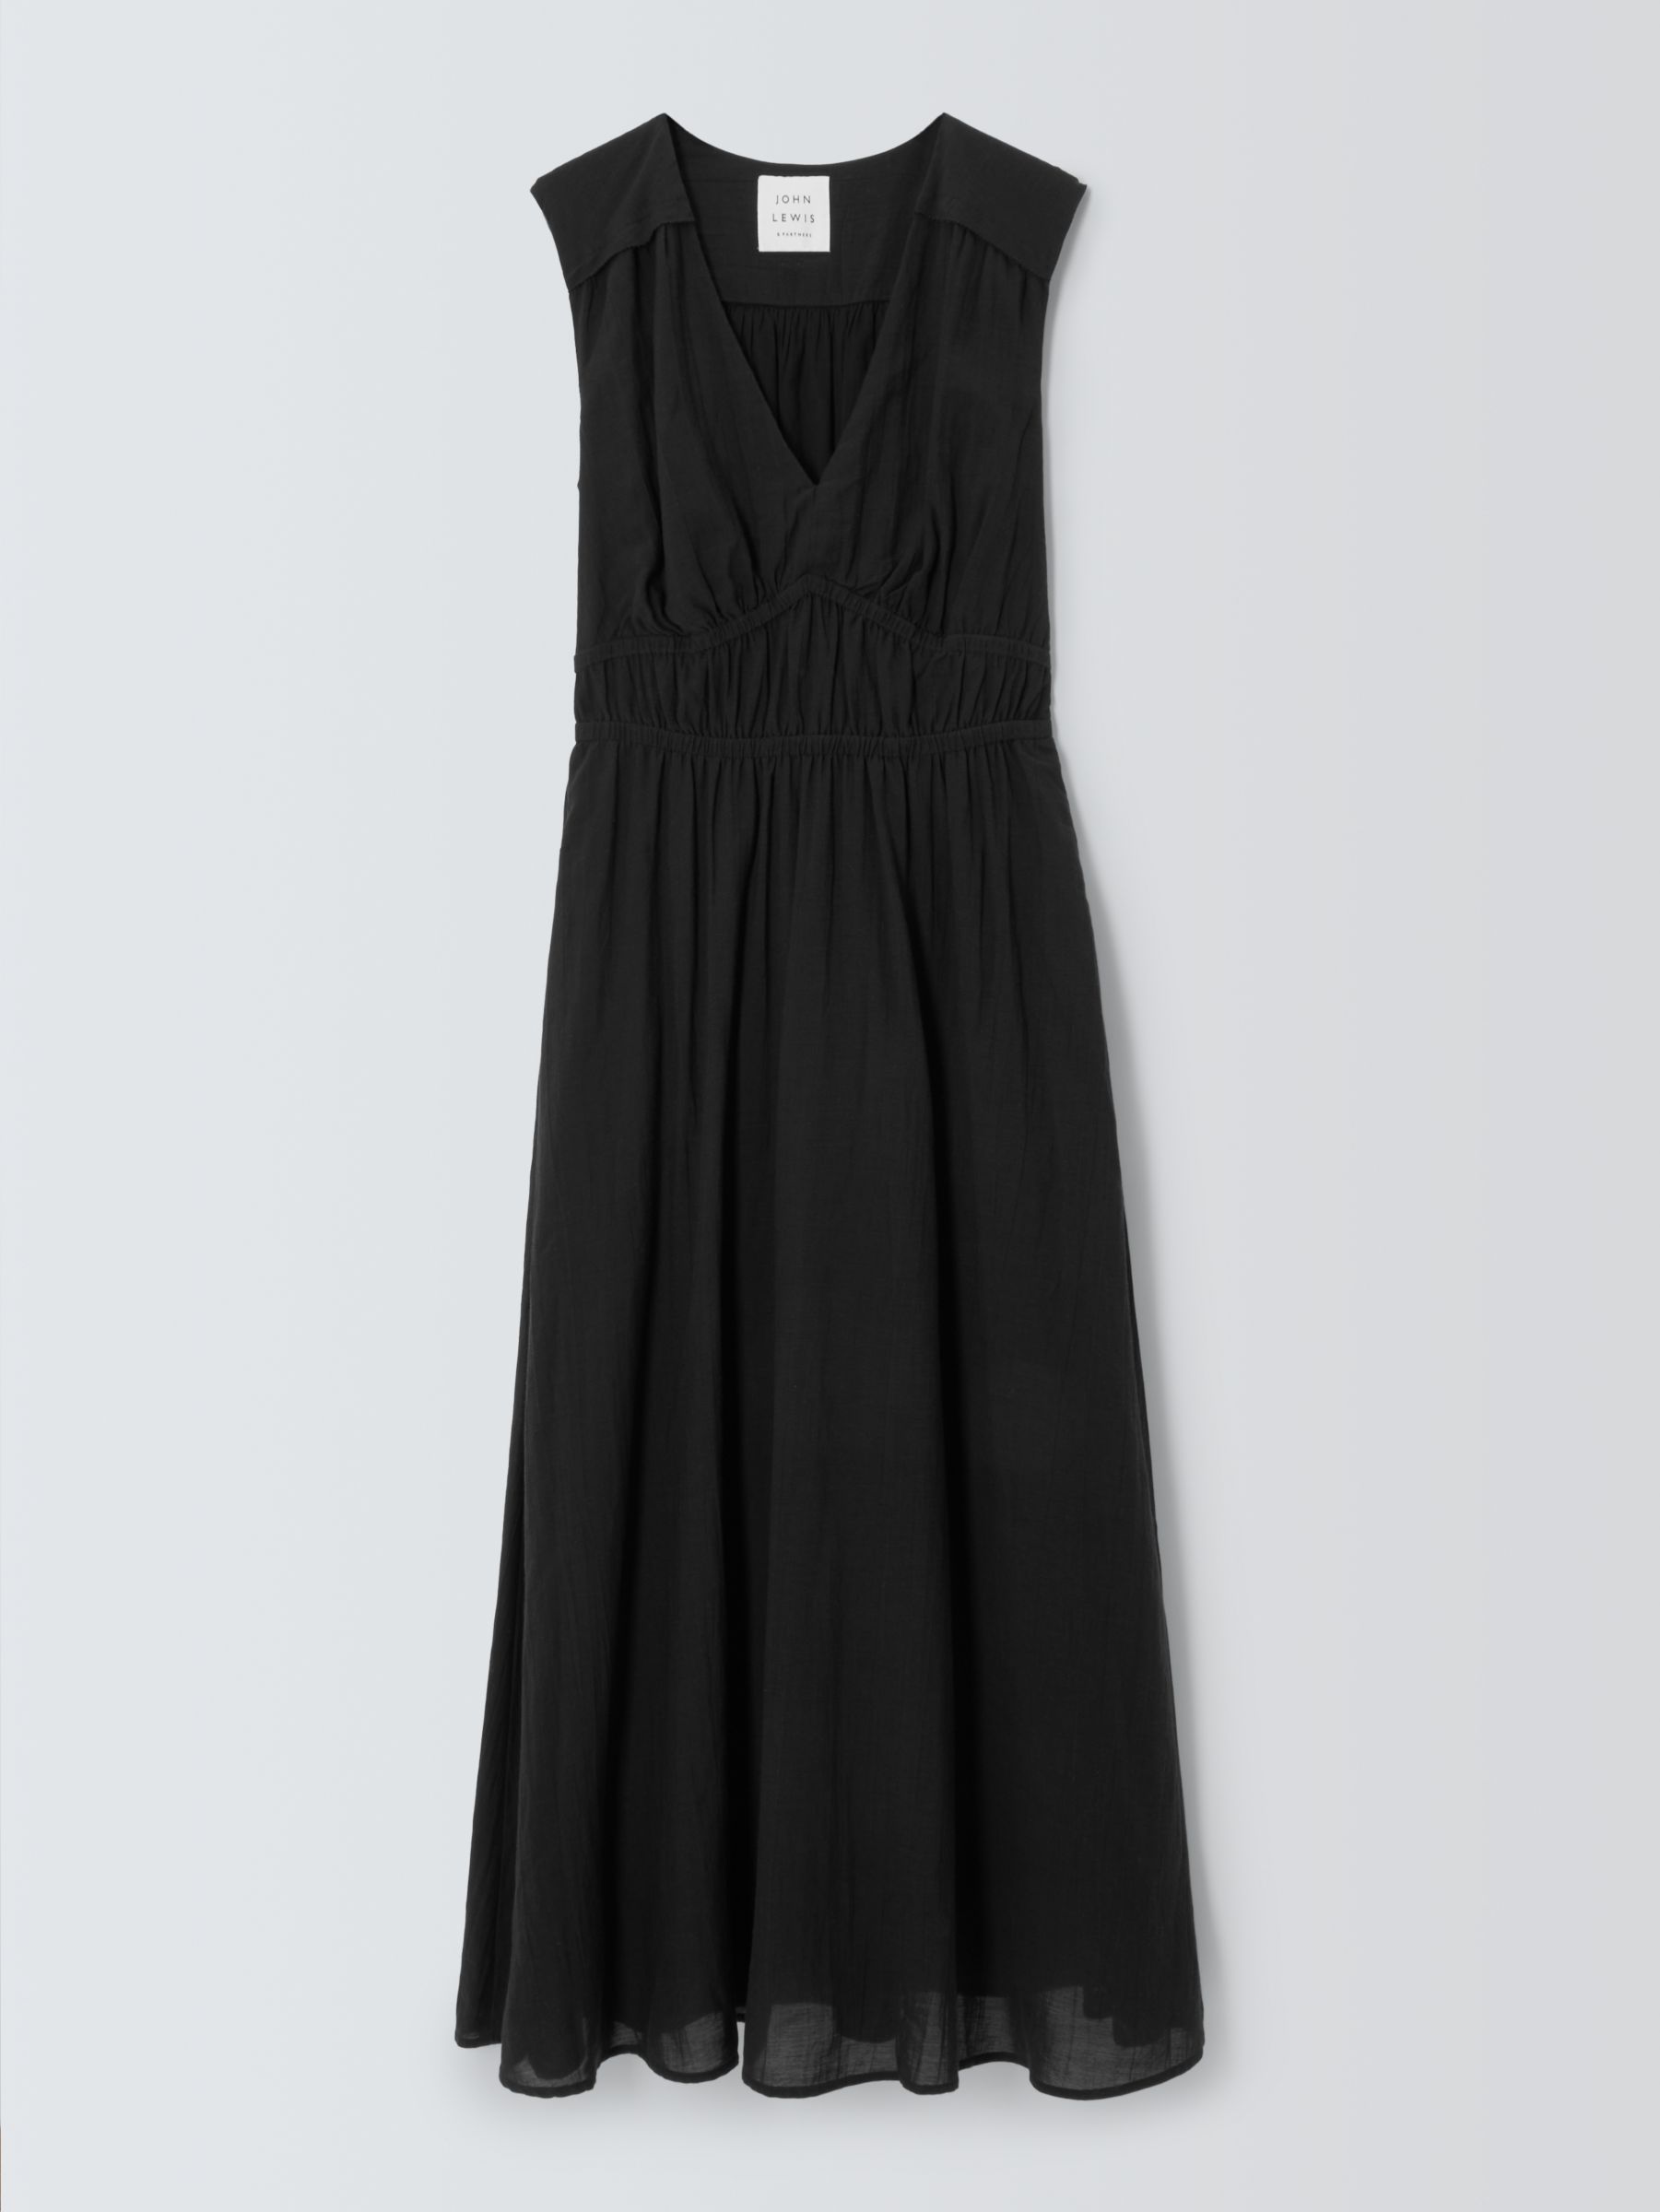 John Lewis Crinkle Cotton Blend Sleeveless Dress, Black at John Lewis ...